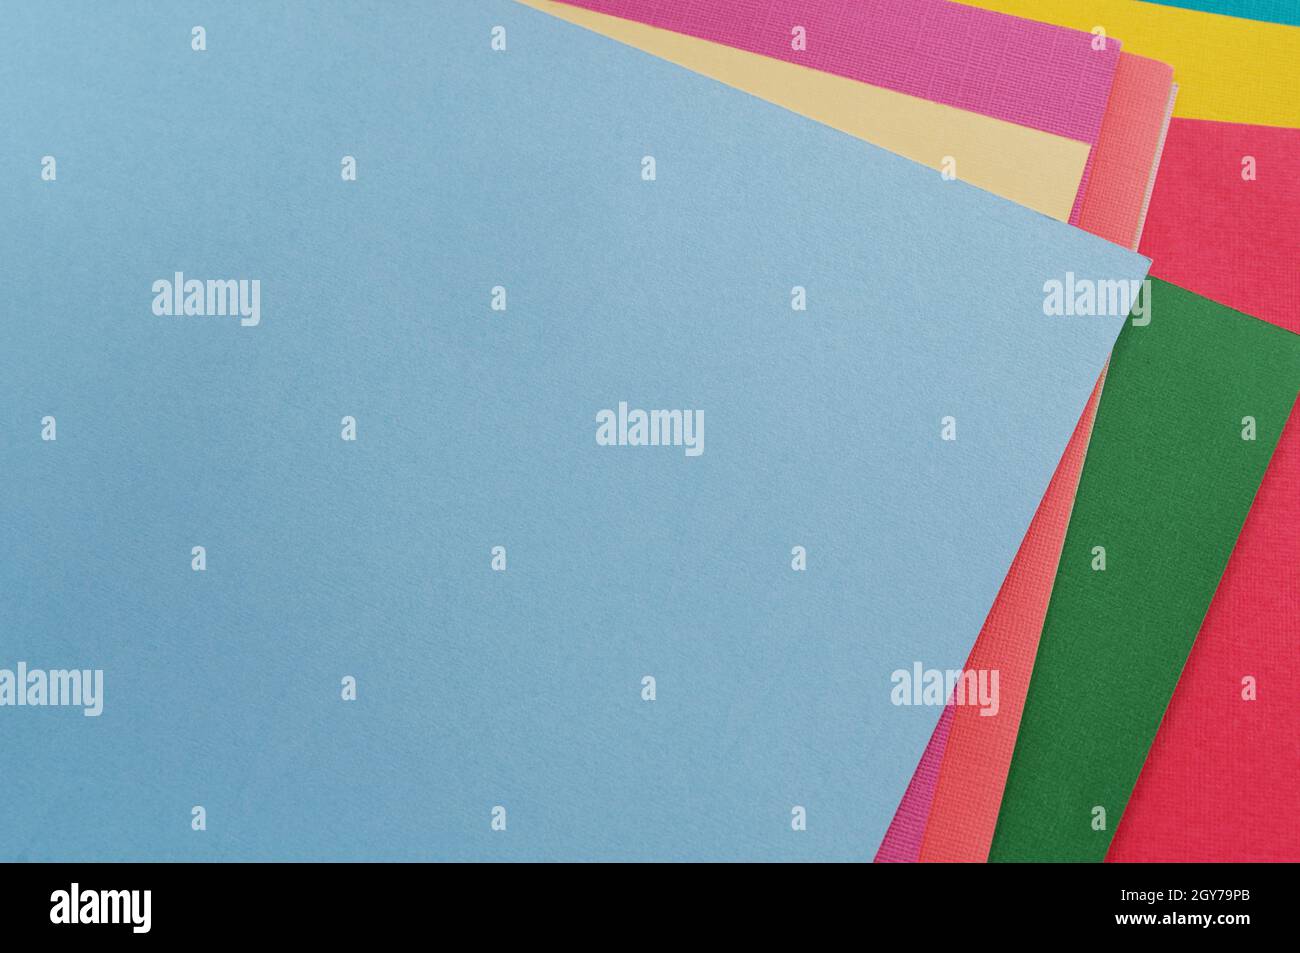 Mehrfarbiges abstraktes Papier aus Pastellfarben Palette, mit geometrischer Form, flach legen. Stockfoto